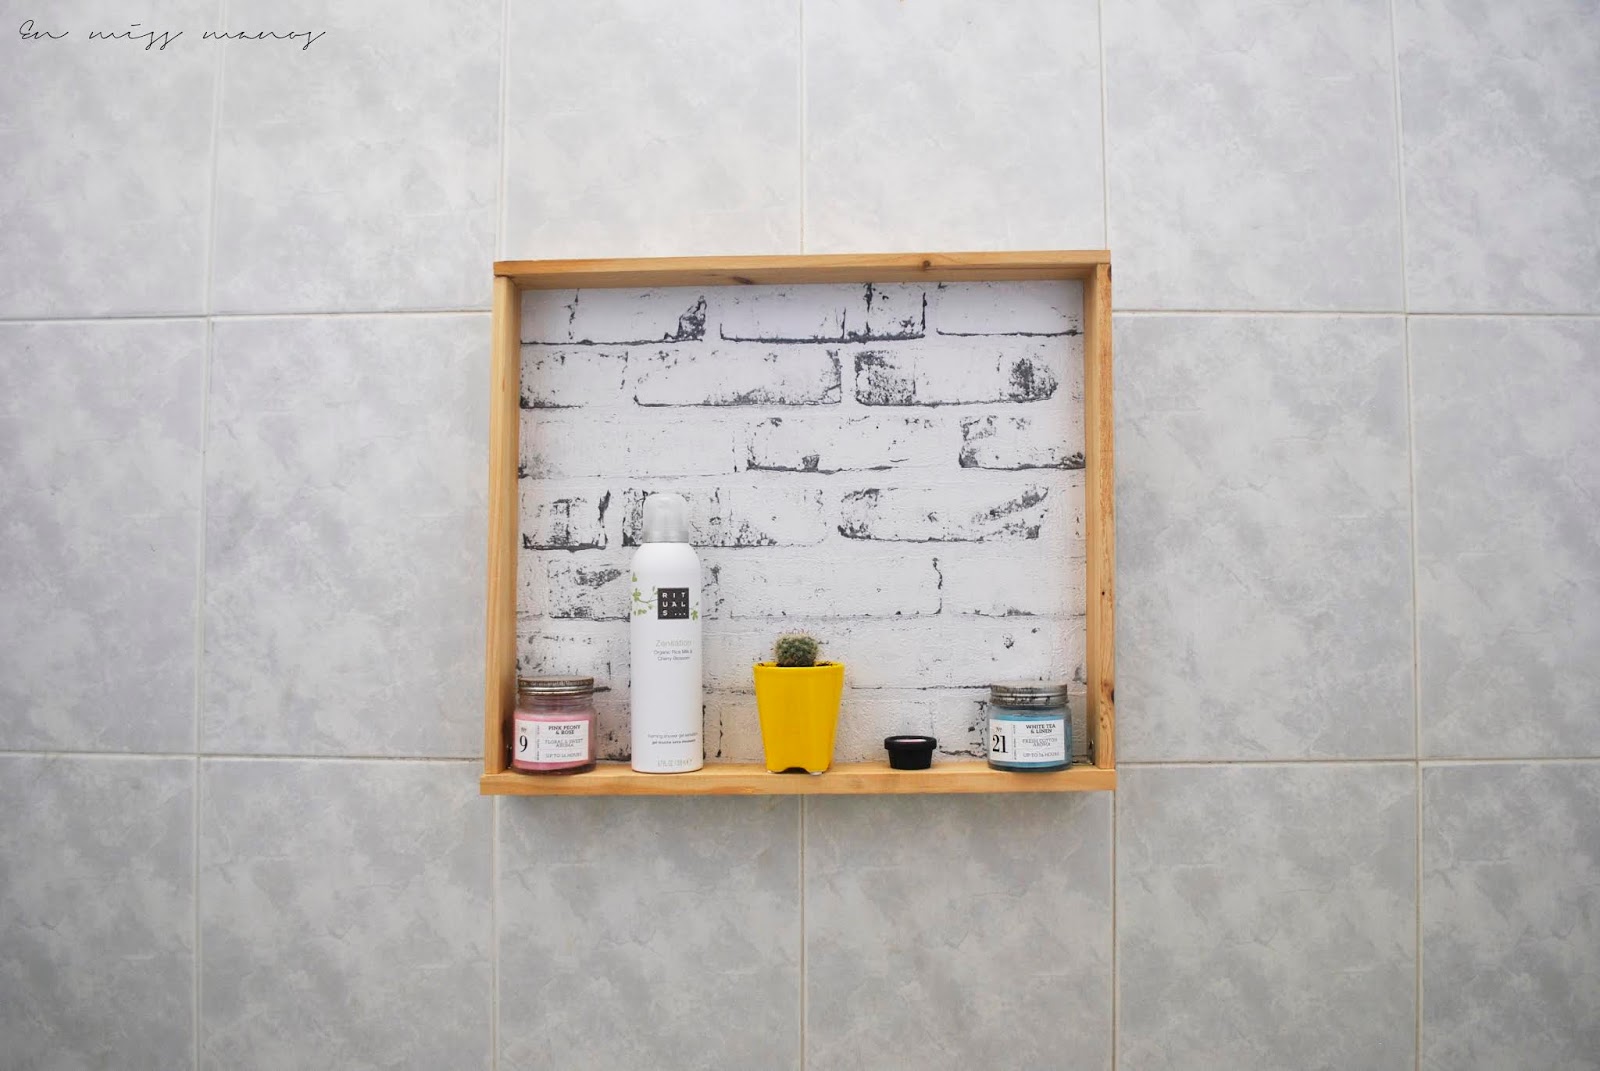 Renovación baño sin obras + estante pared DIY - HANDBOX